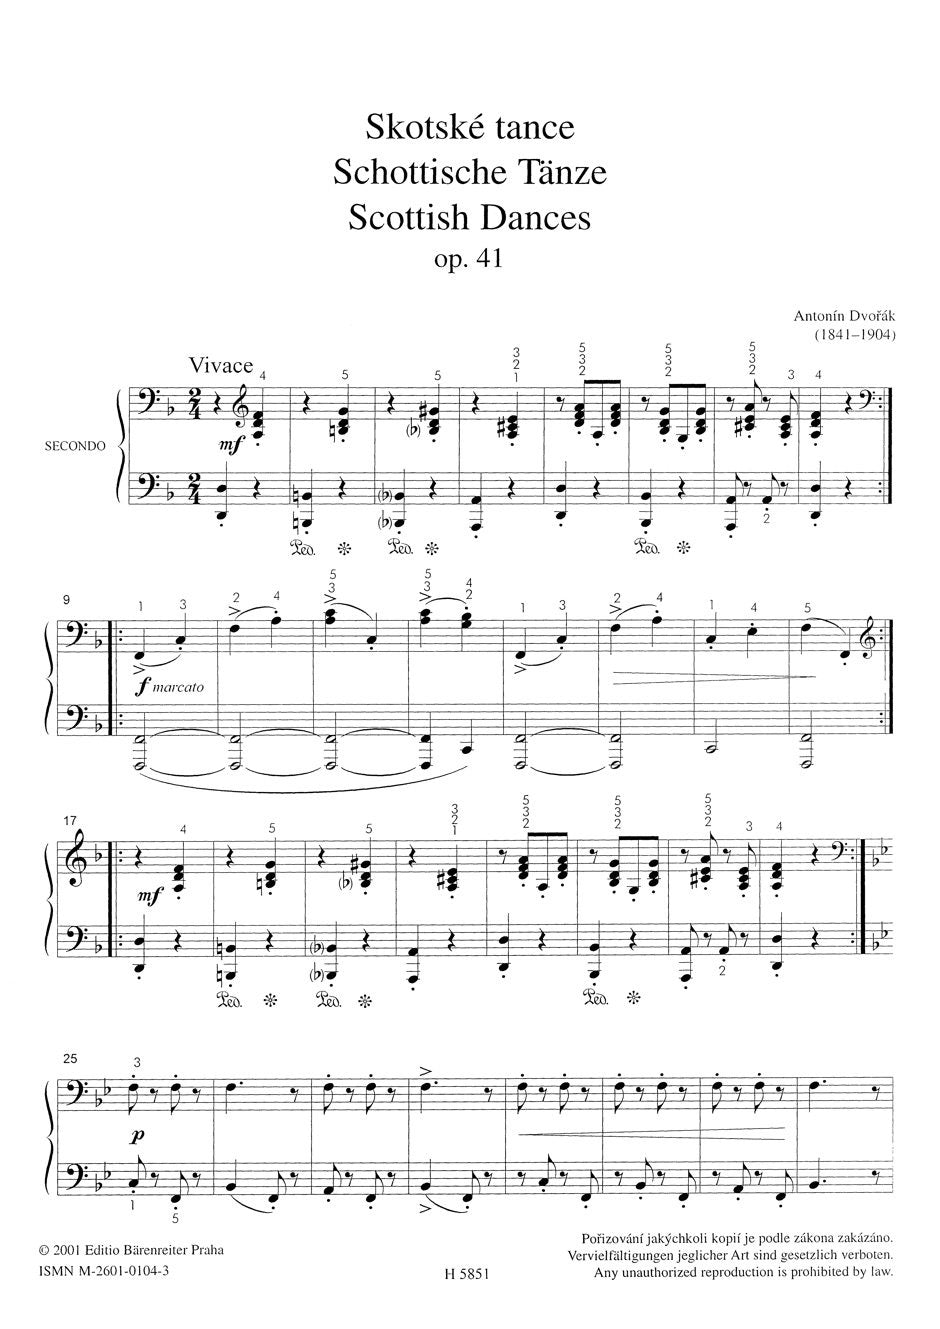 Dvorak Scottish Dances op. 41